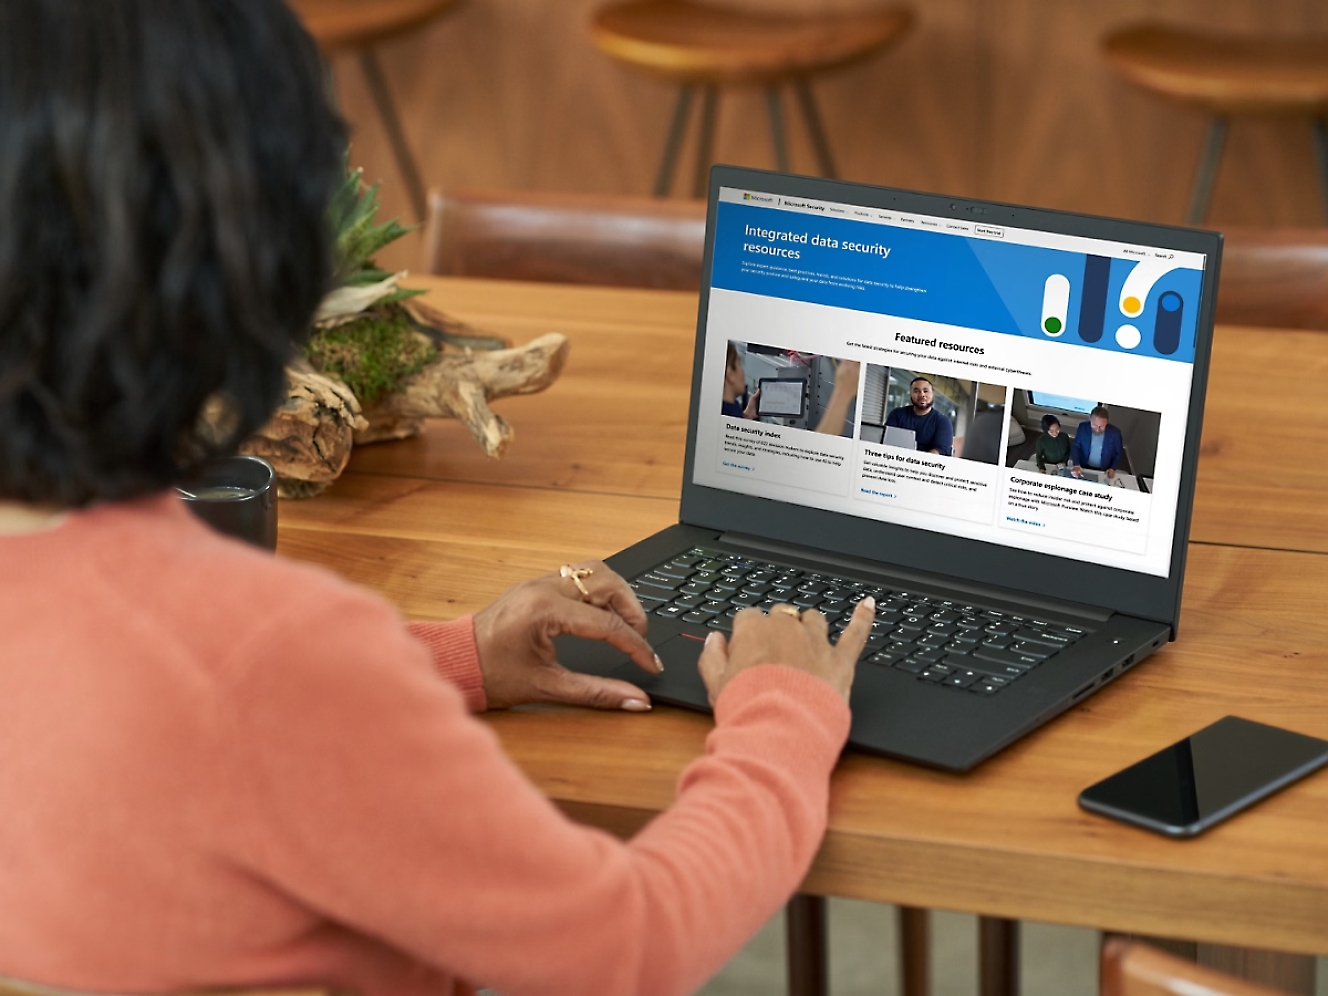 膝上型電腦身穿橙色毛衣的女士使用膝上型電腦，在木桌上的螢幕上顯示有關資料安全性的網站